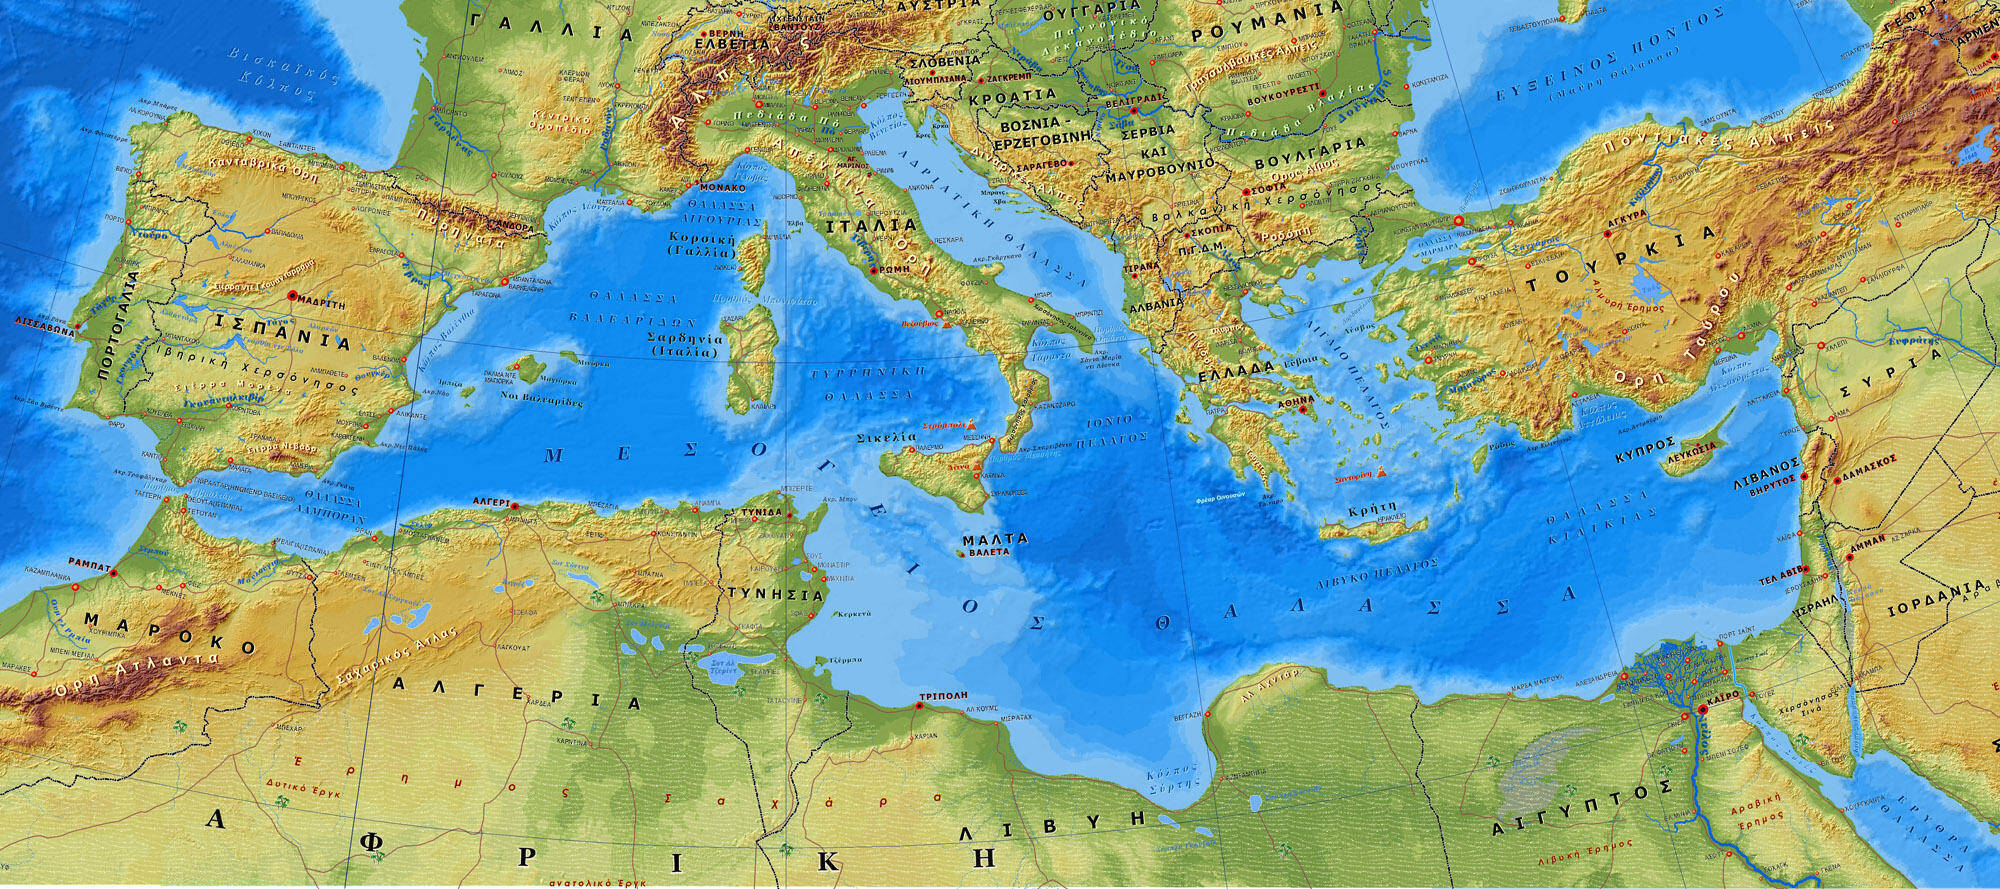 Σημαντικά προγράμματα για την προστασία της Μεσογείου